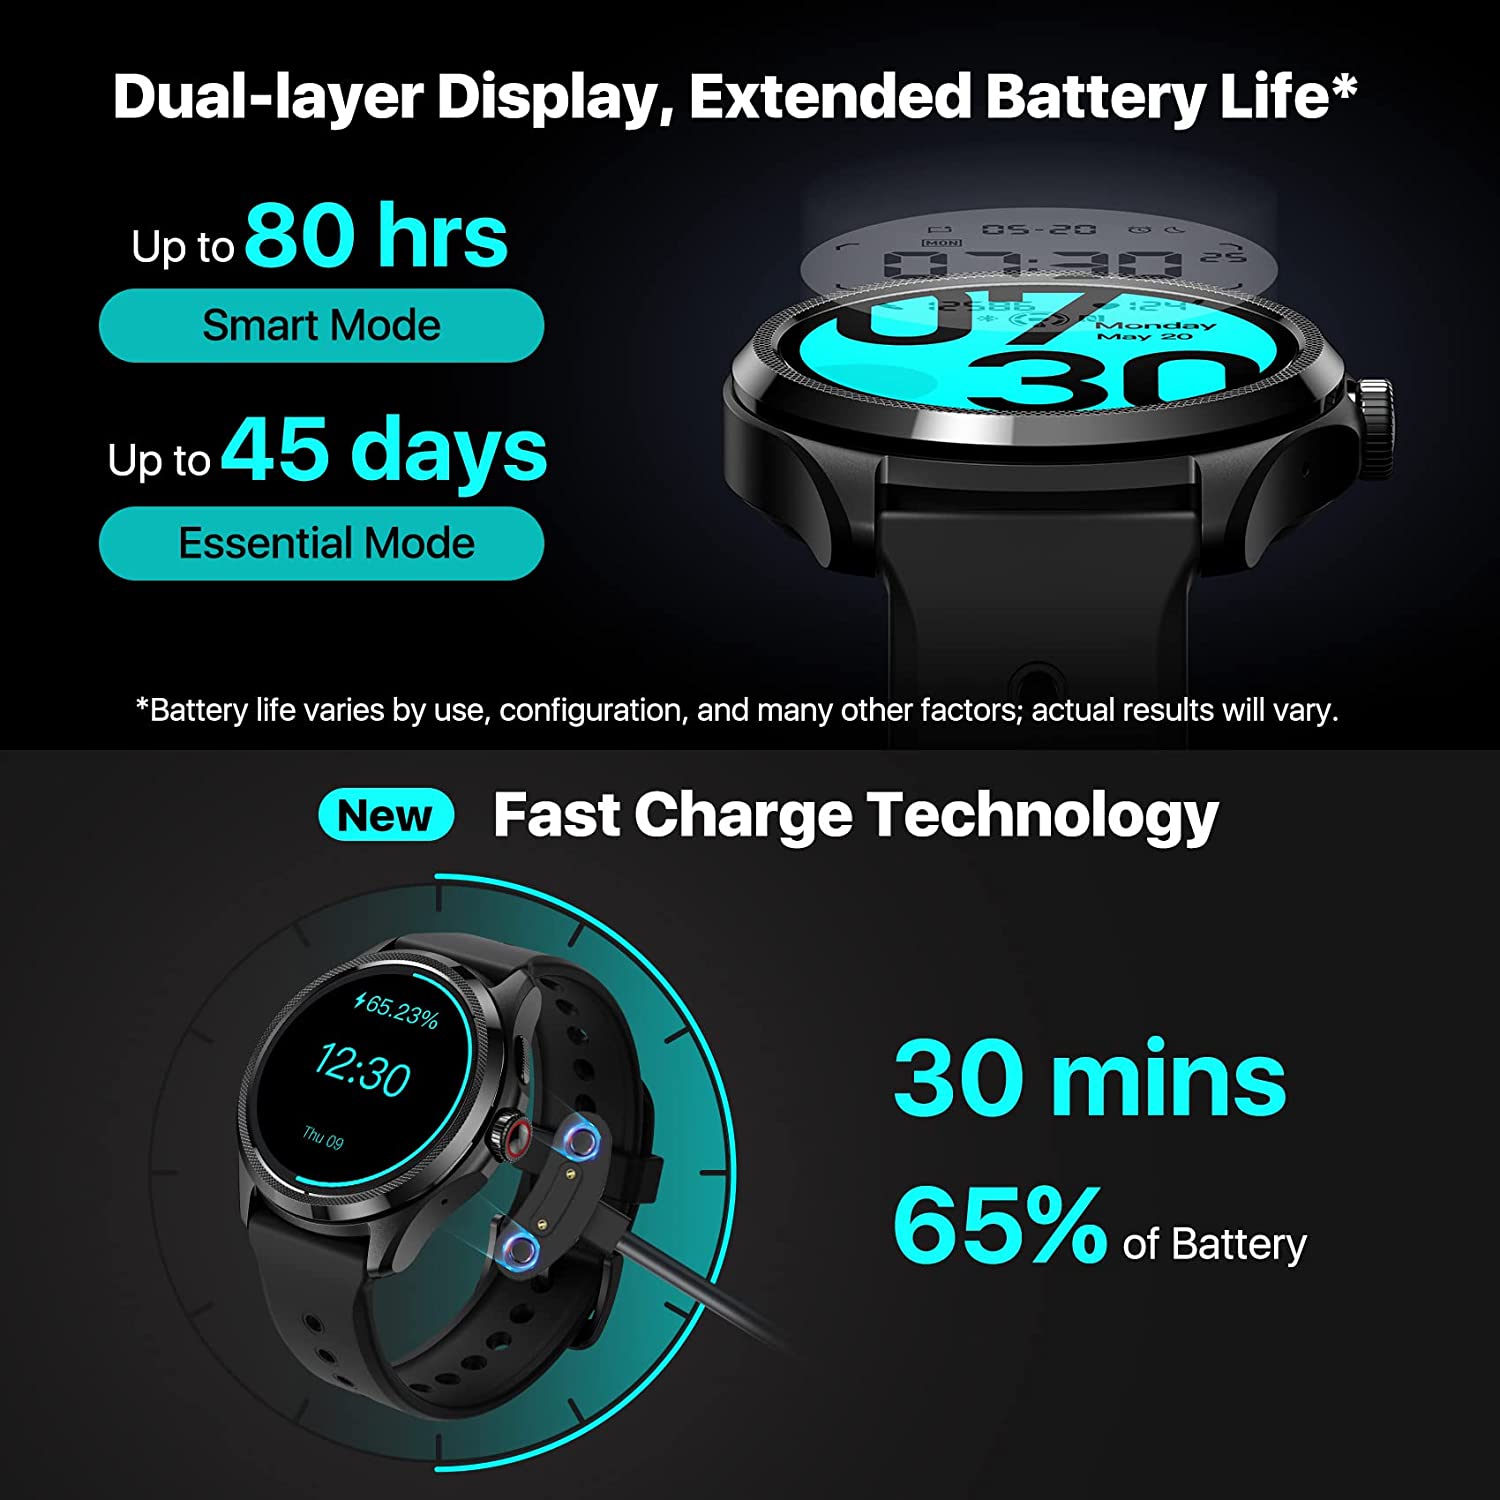 Images promotionnelles TicWatch Pro 5 revendiquant jusqu'à 80 heures d'autonomie de la batterie et 30 minutes de charge rapide pour 65% de la durée de vie de la batterie à partir d'une liste Amazon